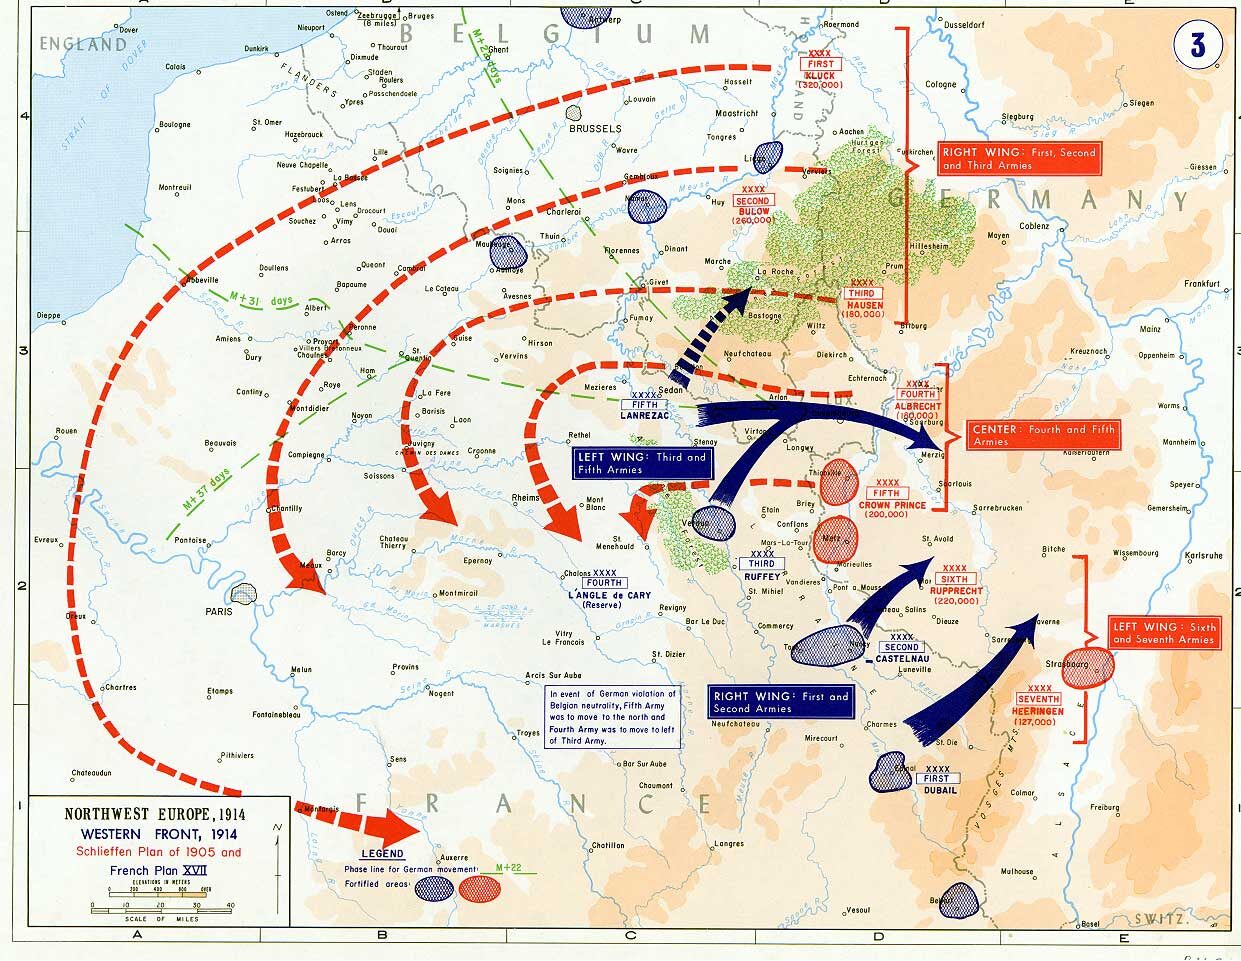 Western Front 1914 and Schlieffen Plan